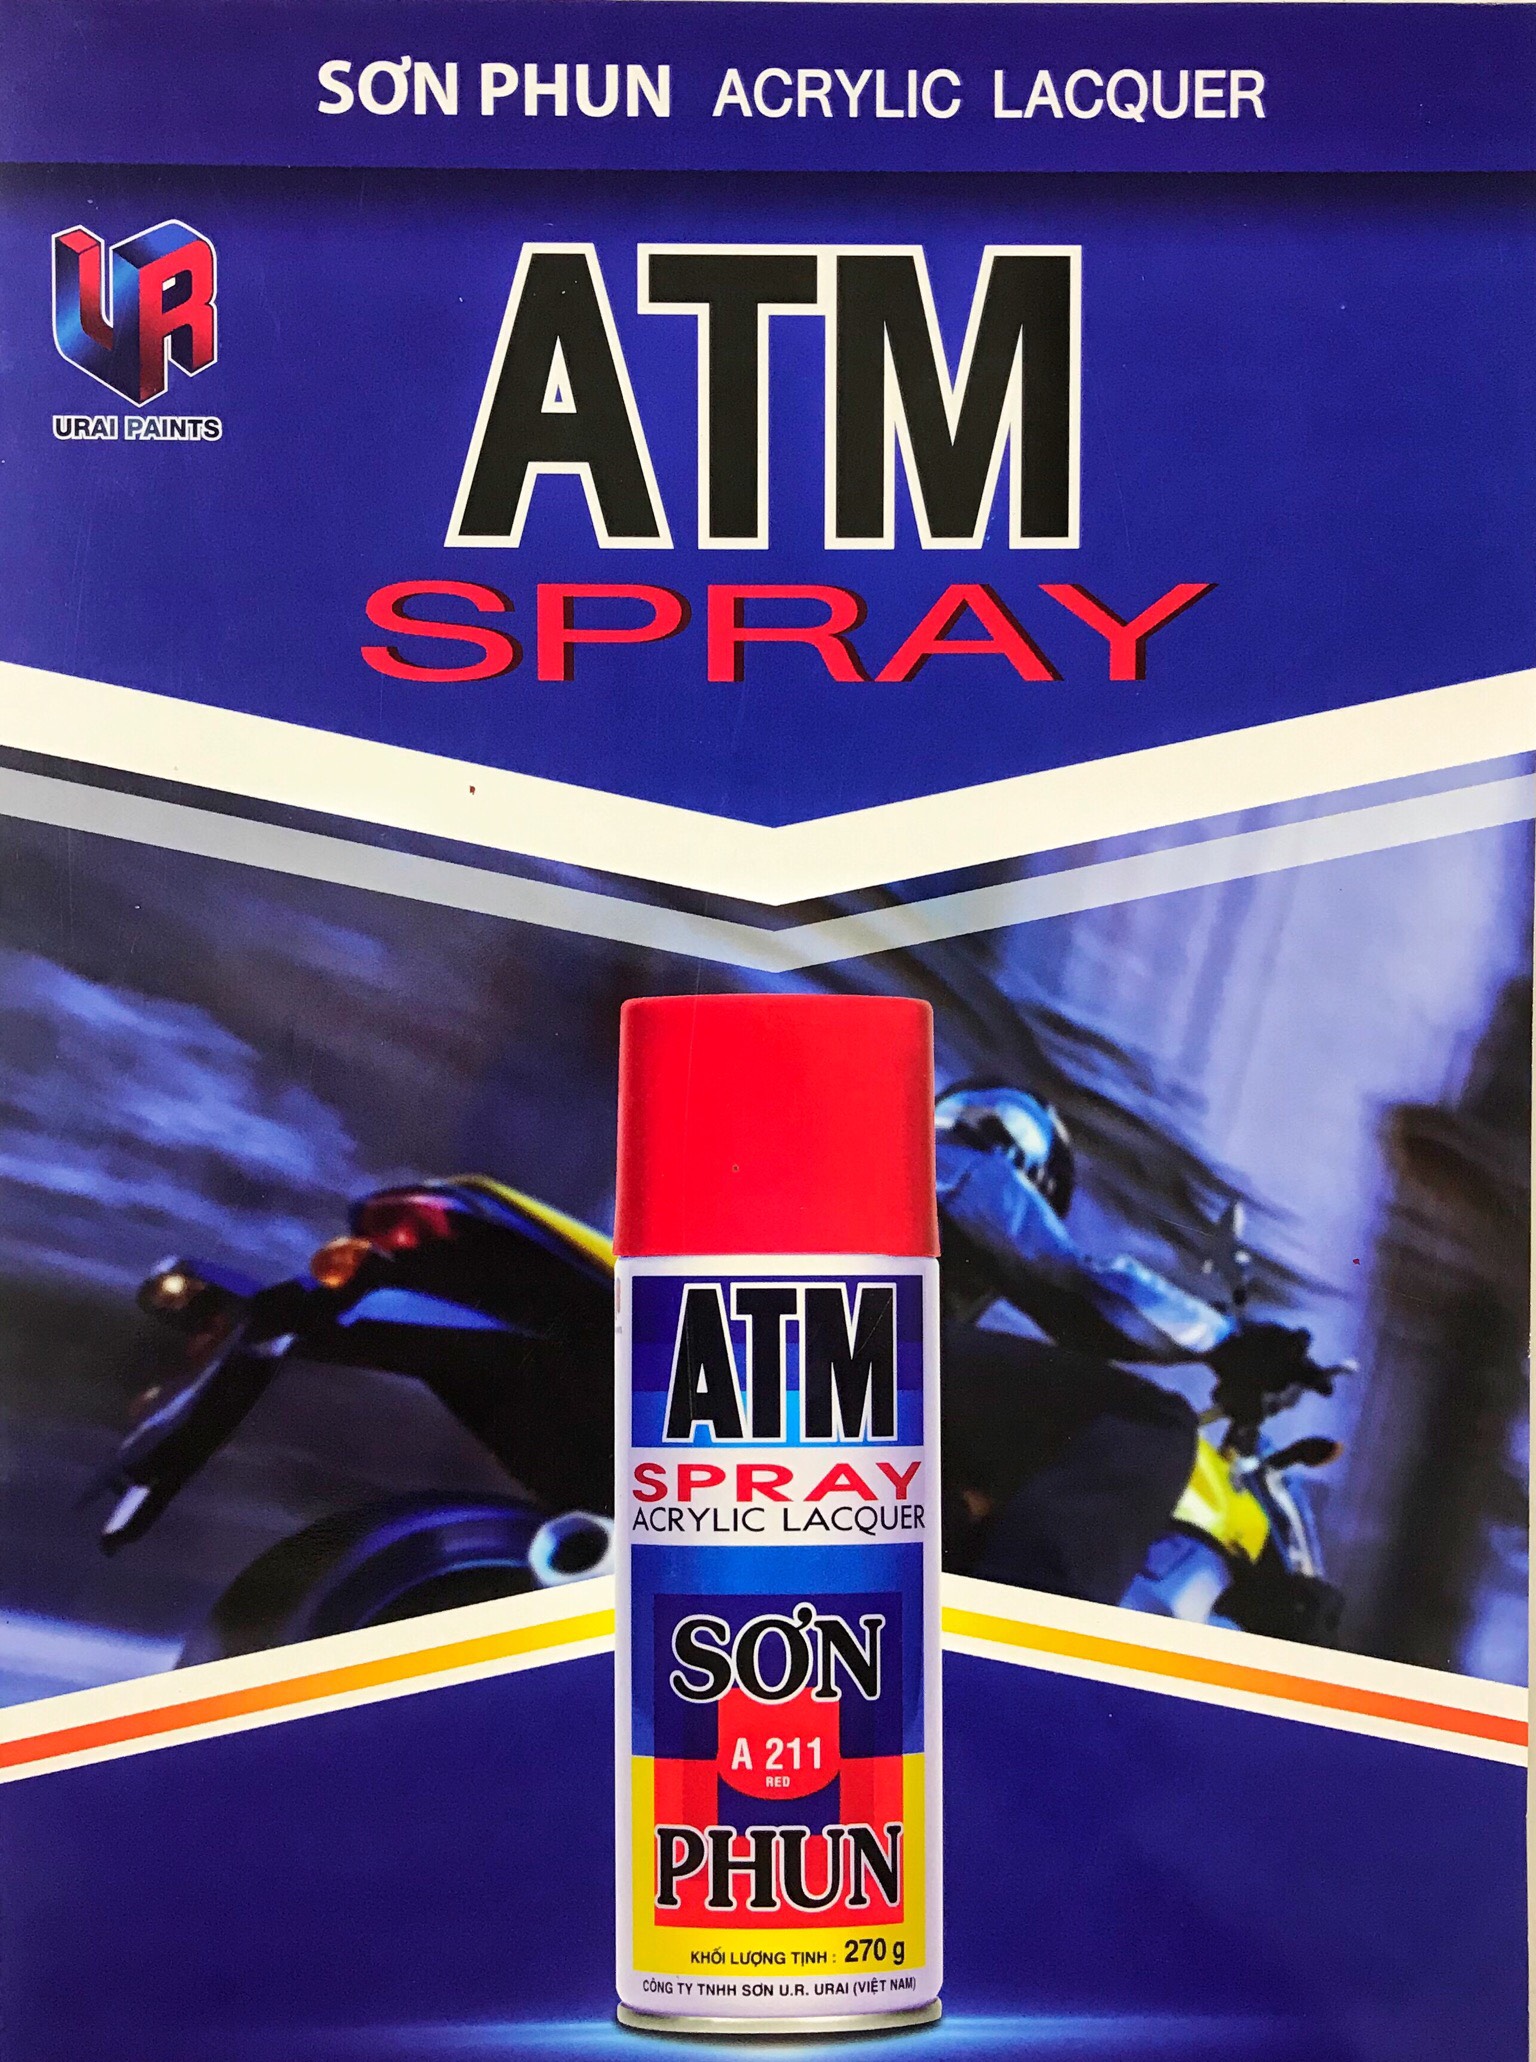 Bảng màu sơn xịt ATM Spray